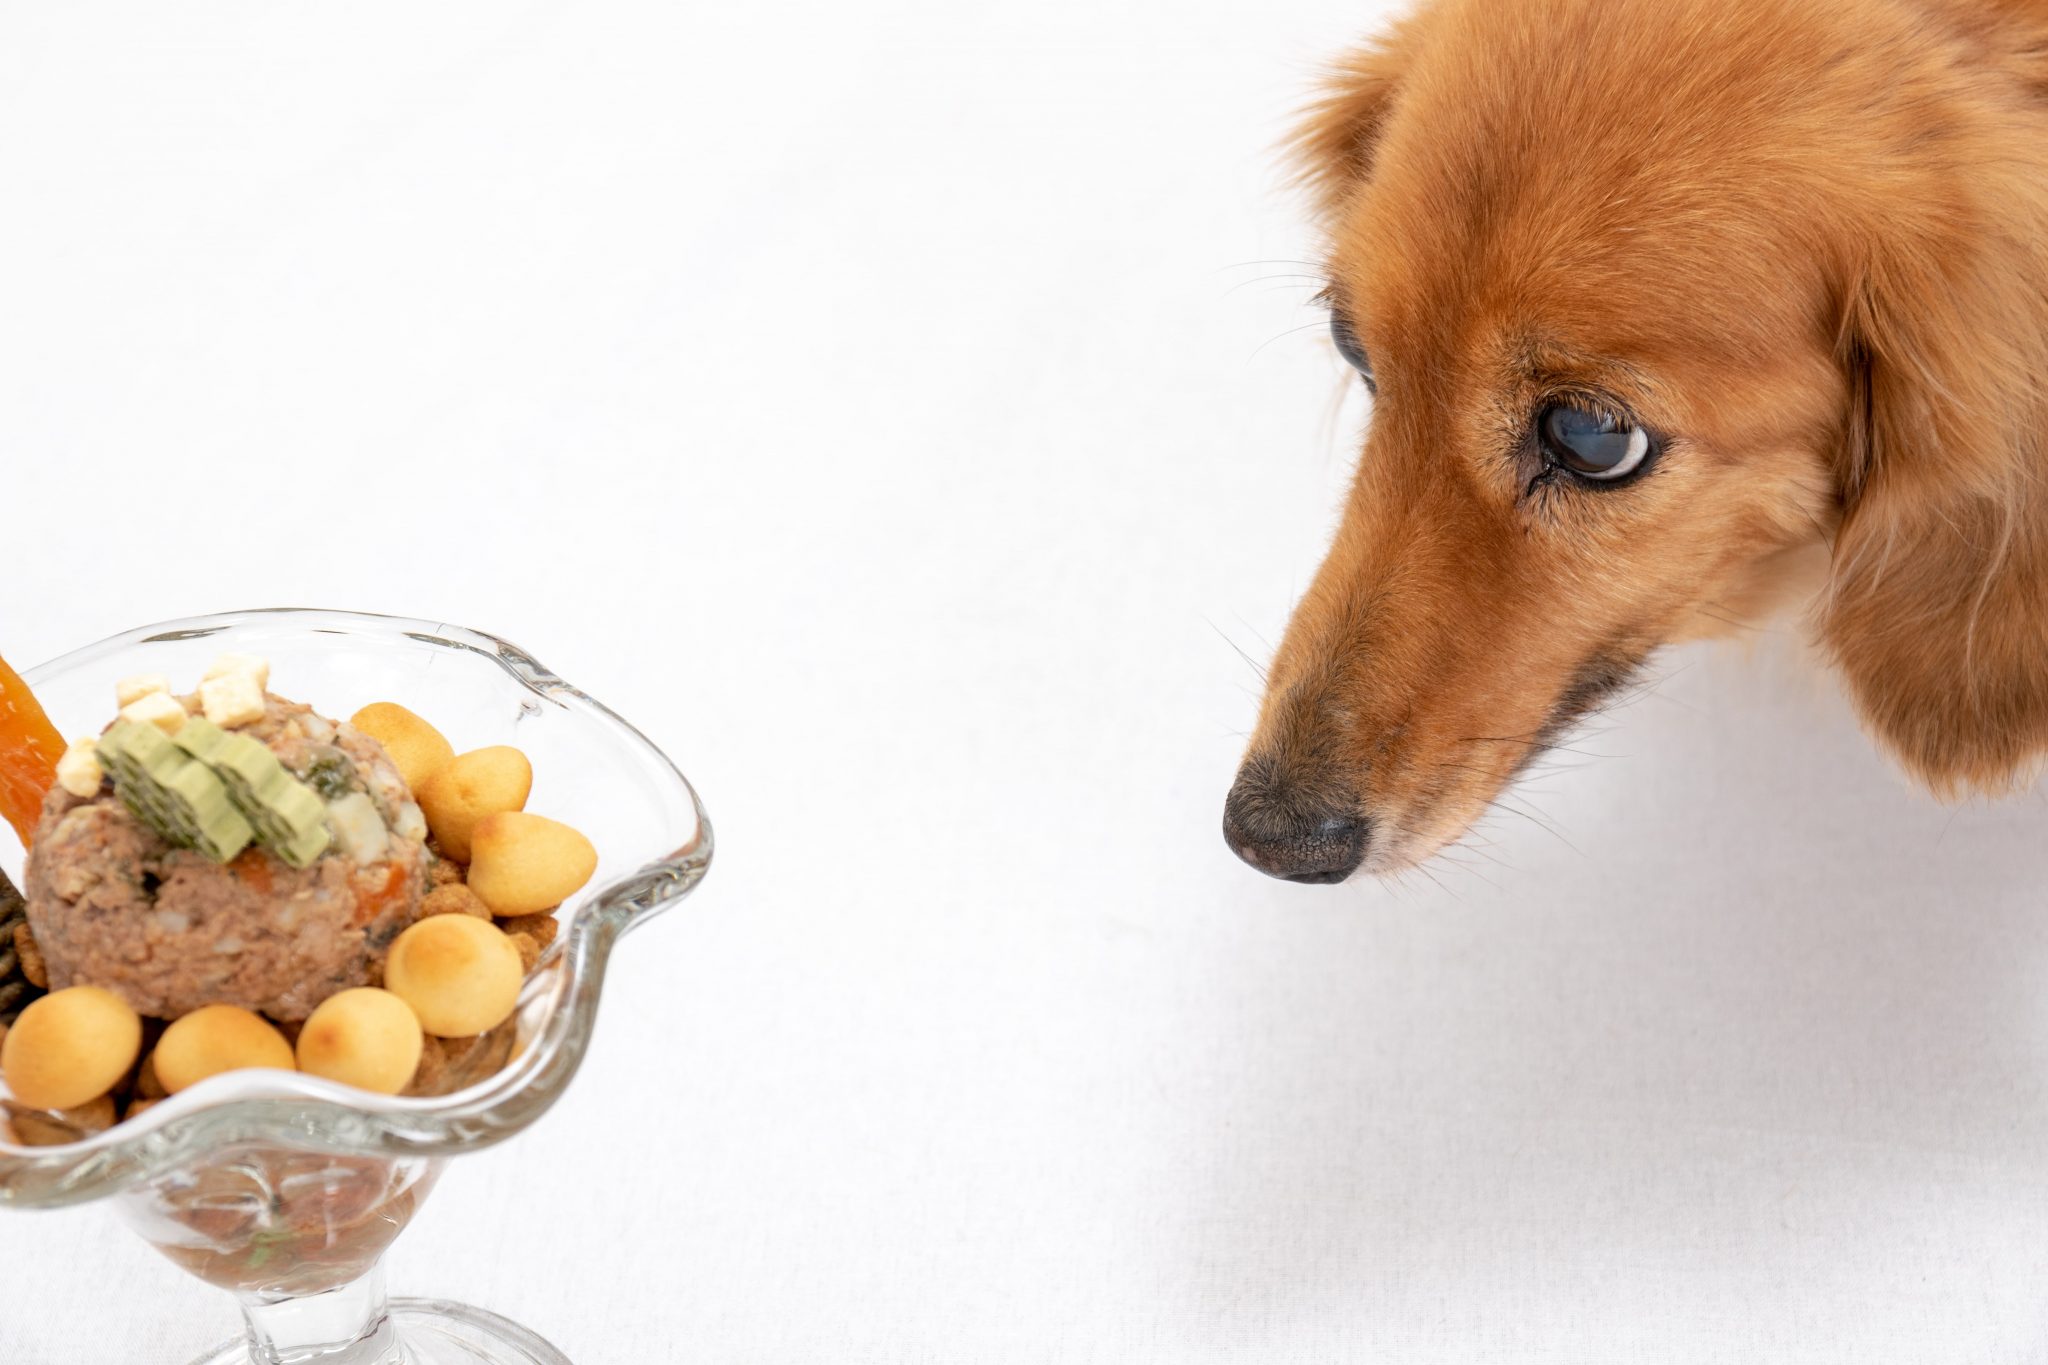 犬に与えるといい食材 与える際の注意点やポイント Newscast